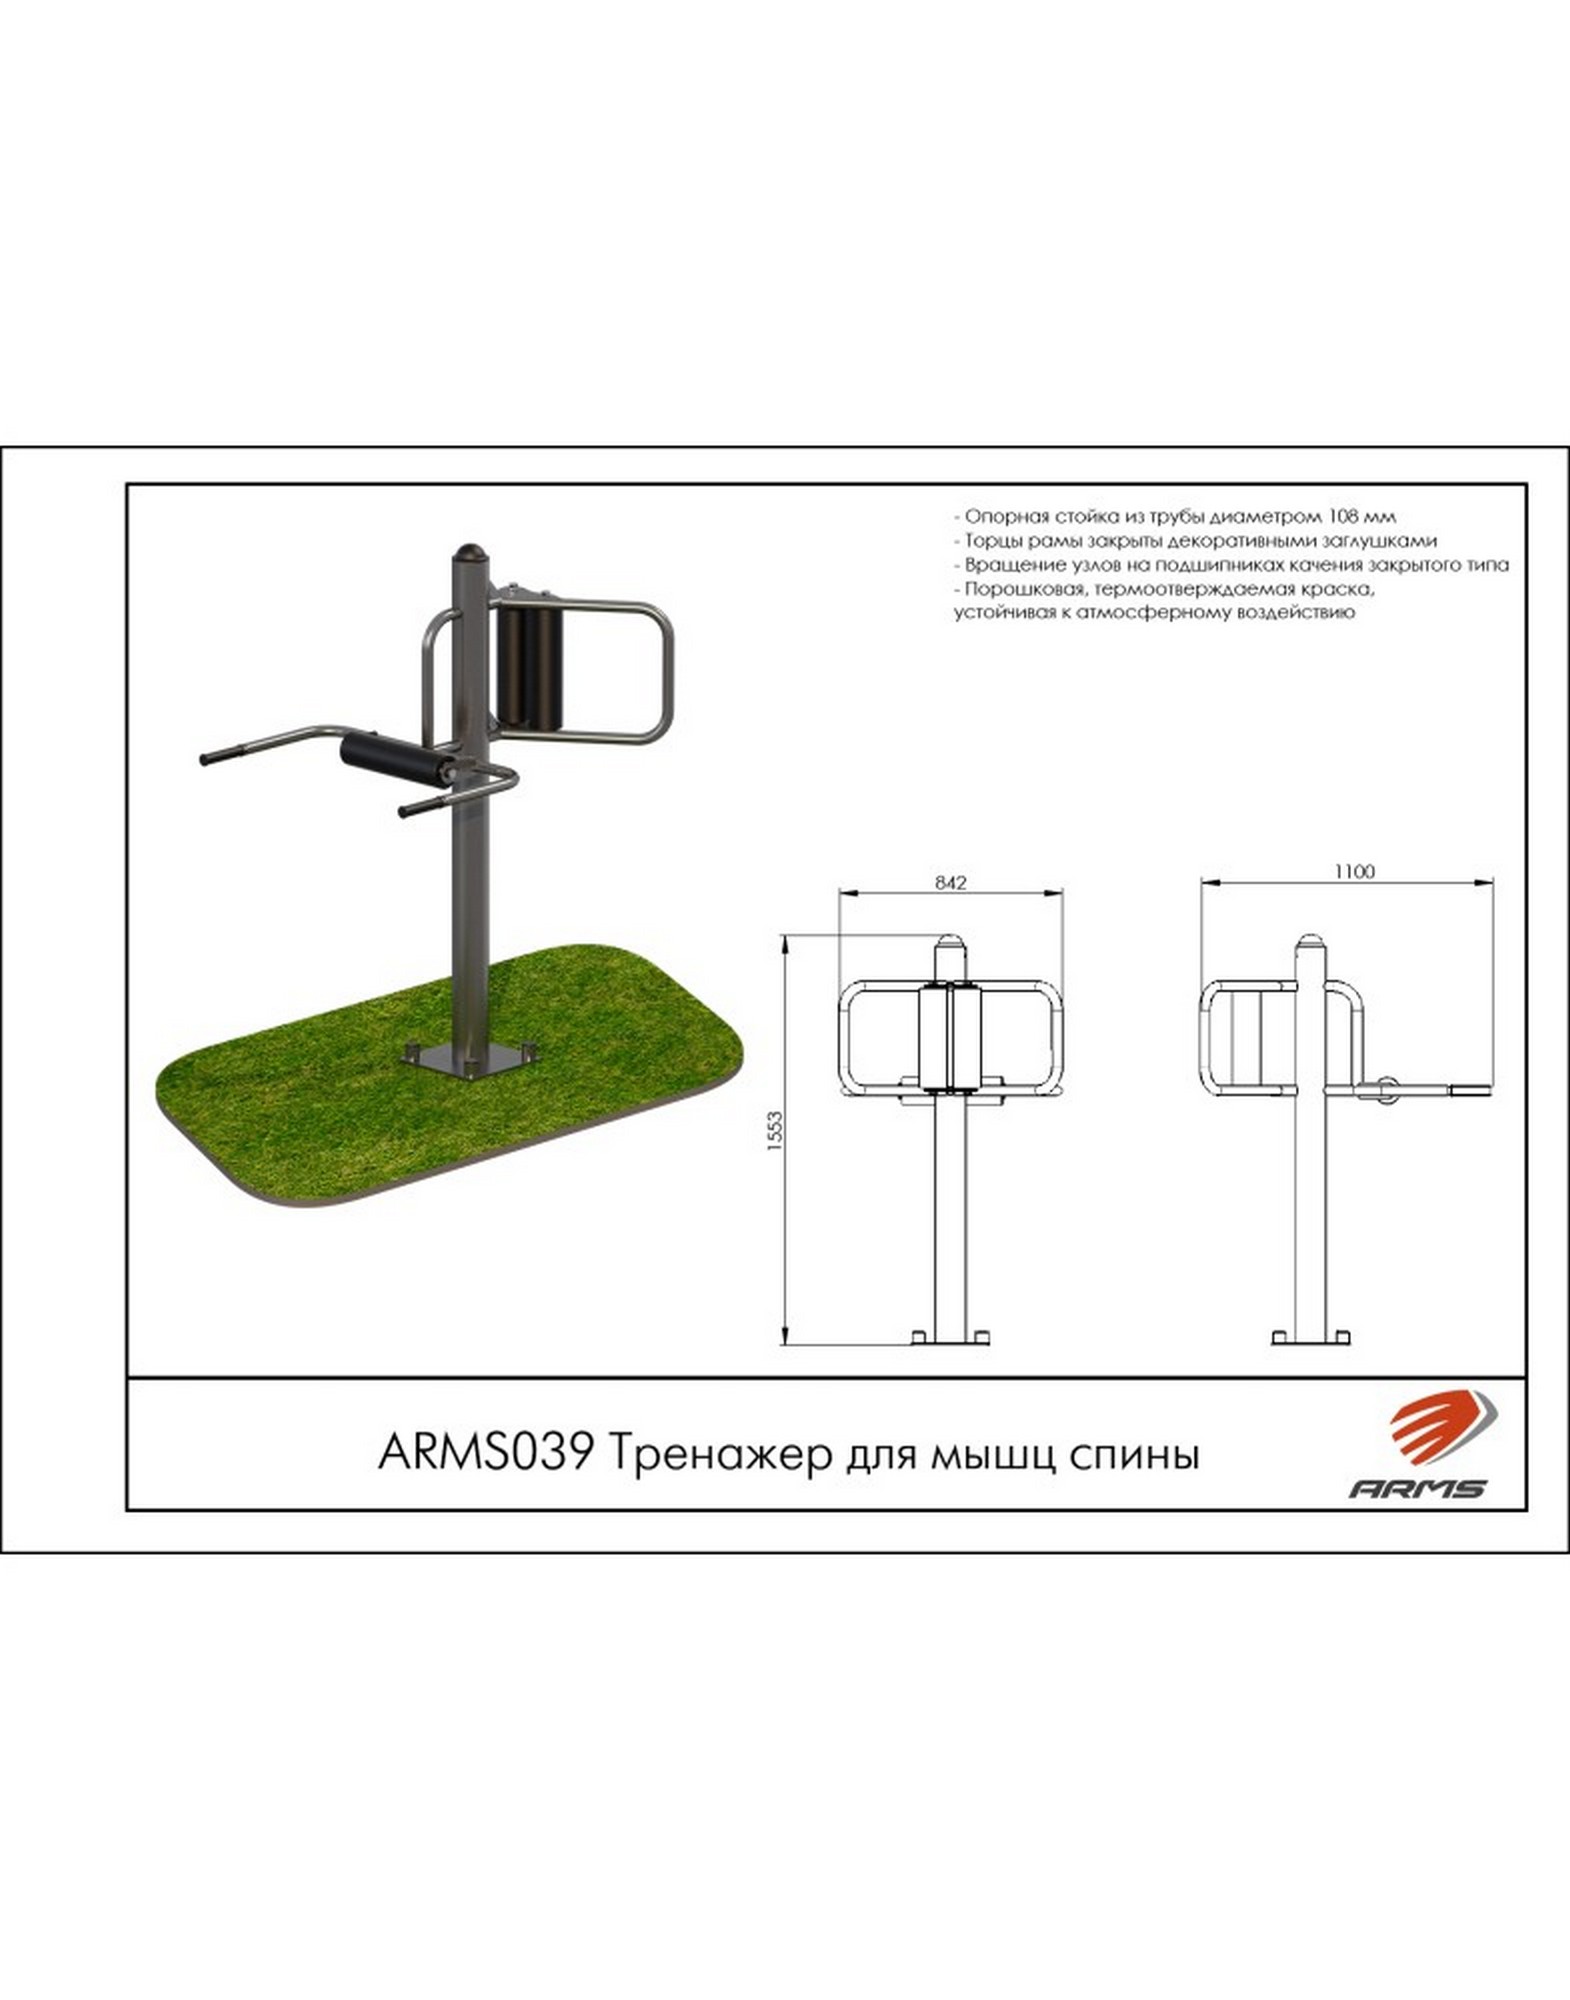 Тренажер для мышц спины ARMS ARMS039 1570_2000